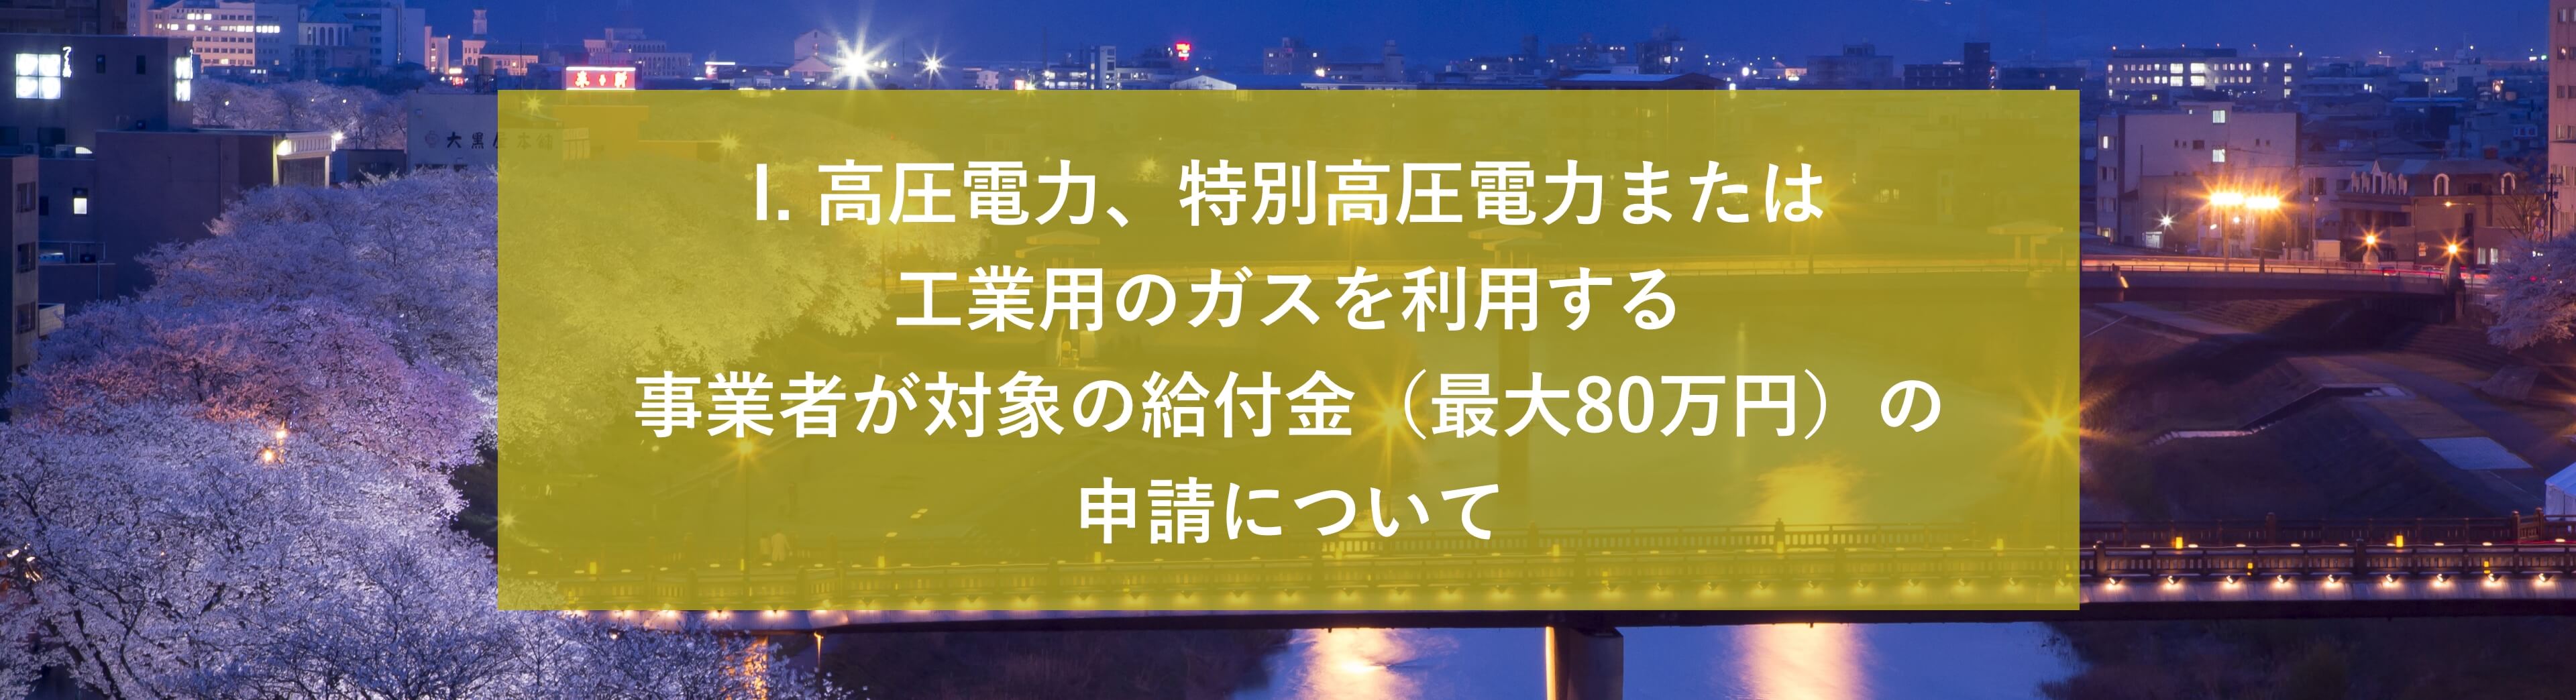 福井県 電気・ガス価格⾼騰緊急対策給付⾦申請について